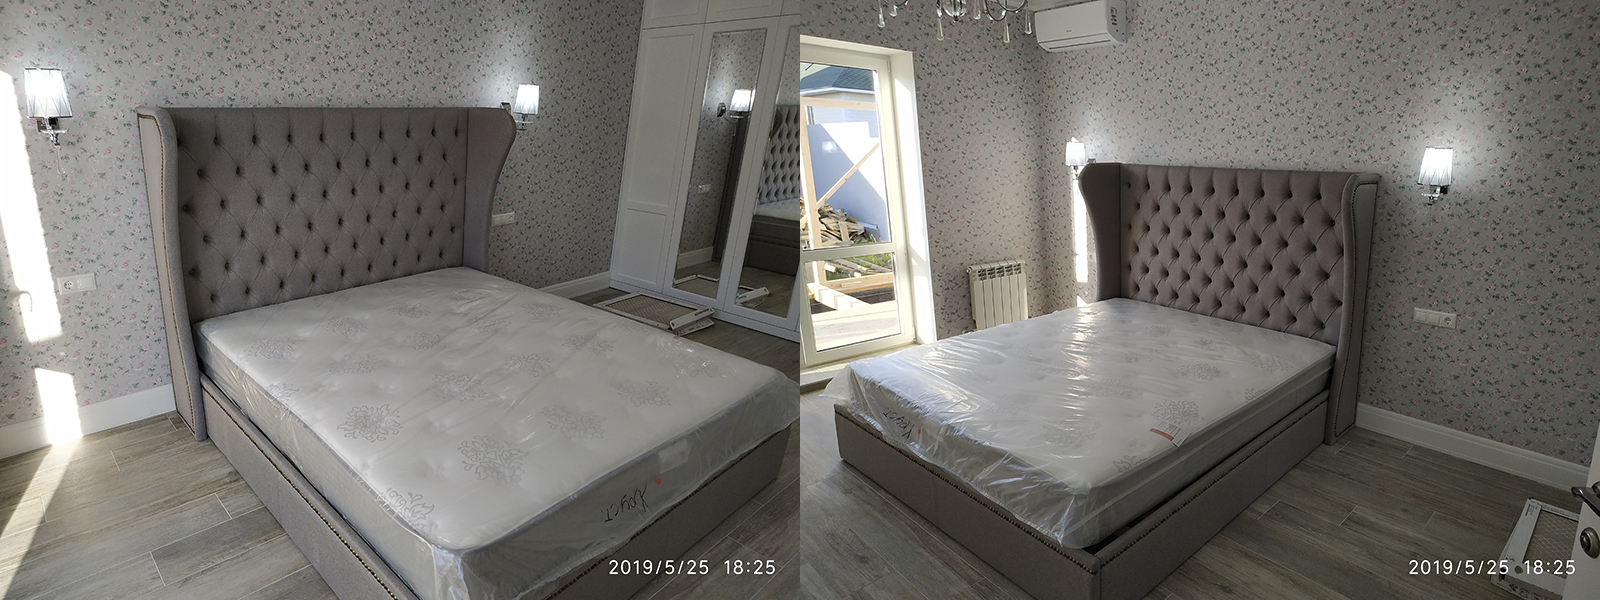 Обшивка кровати в Краснодаре от опытных специалистов мастерской MebelProfi